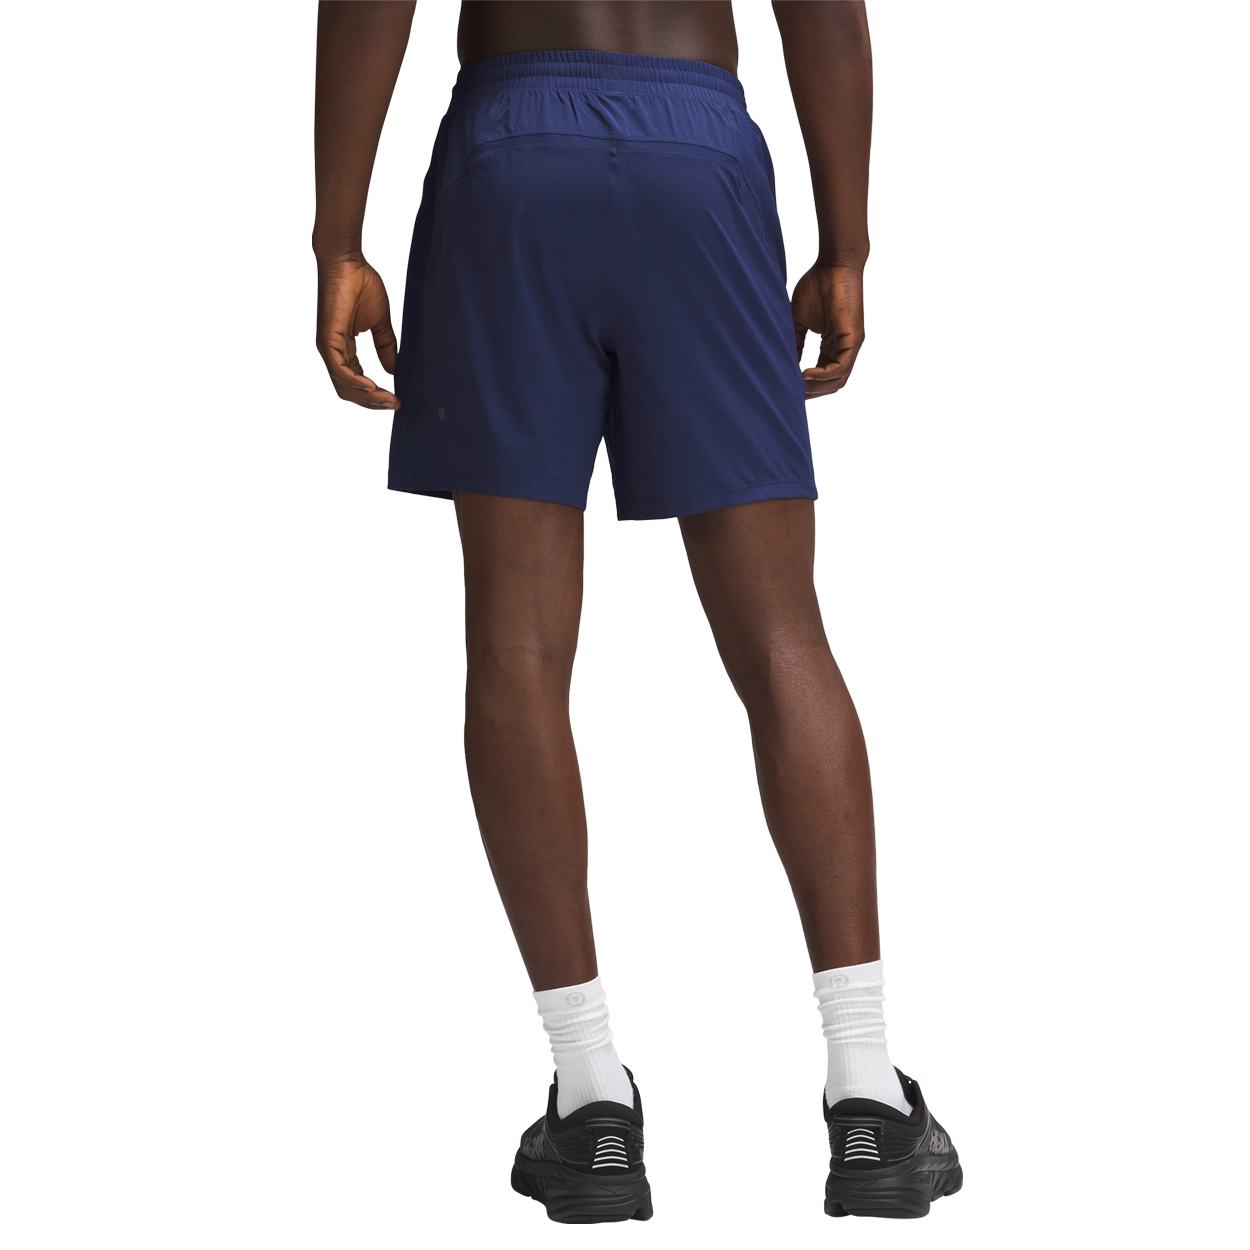 Red Running/Training Shorts - Men's Pace Breaker Linerless Short 7 - Size M | Lululemon